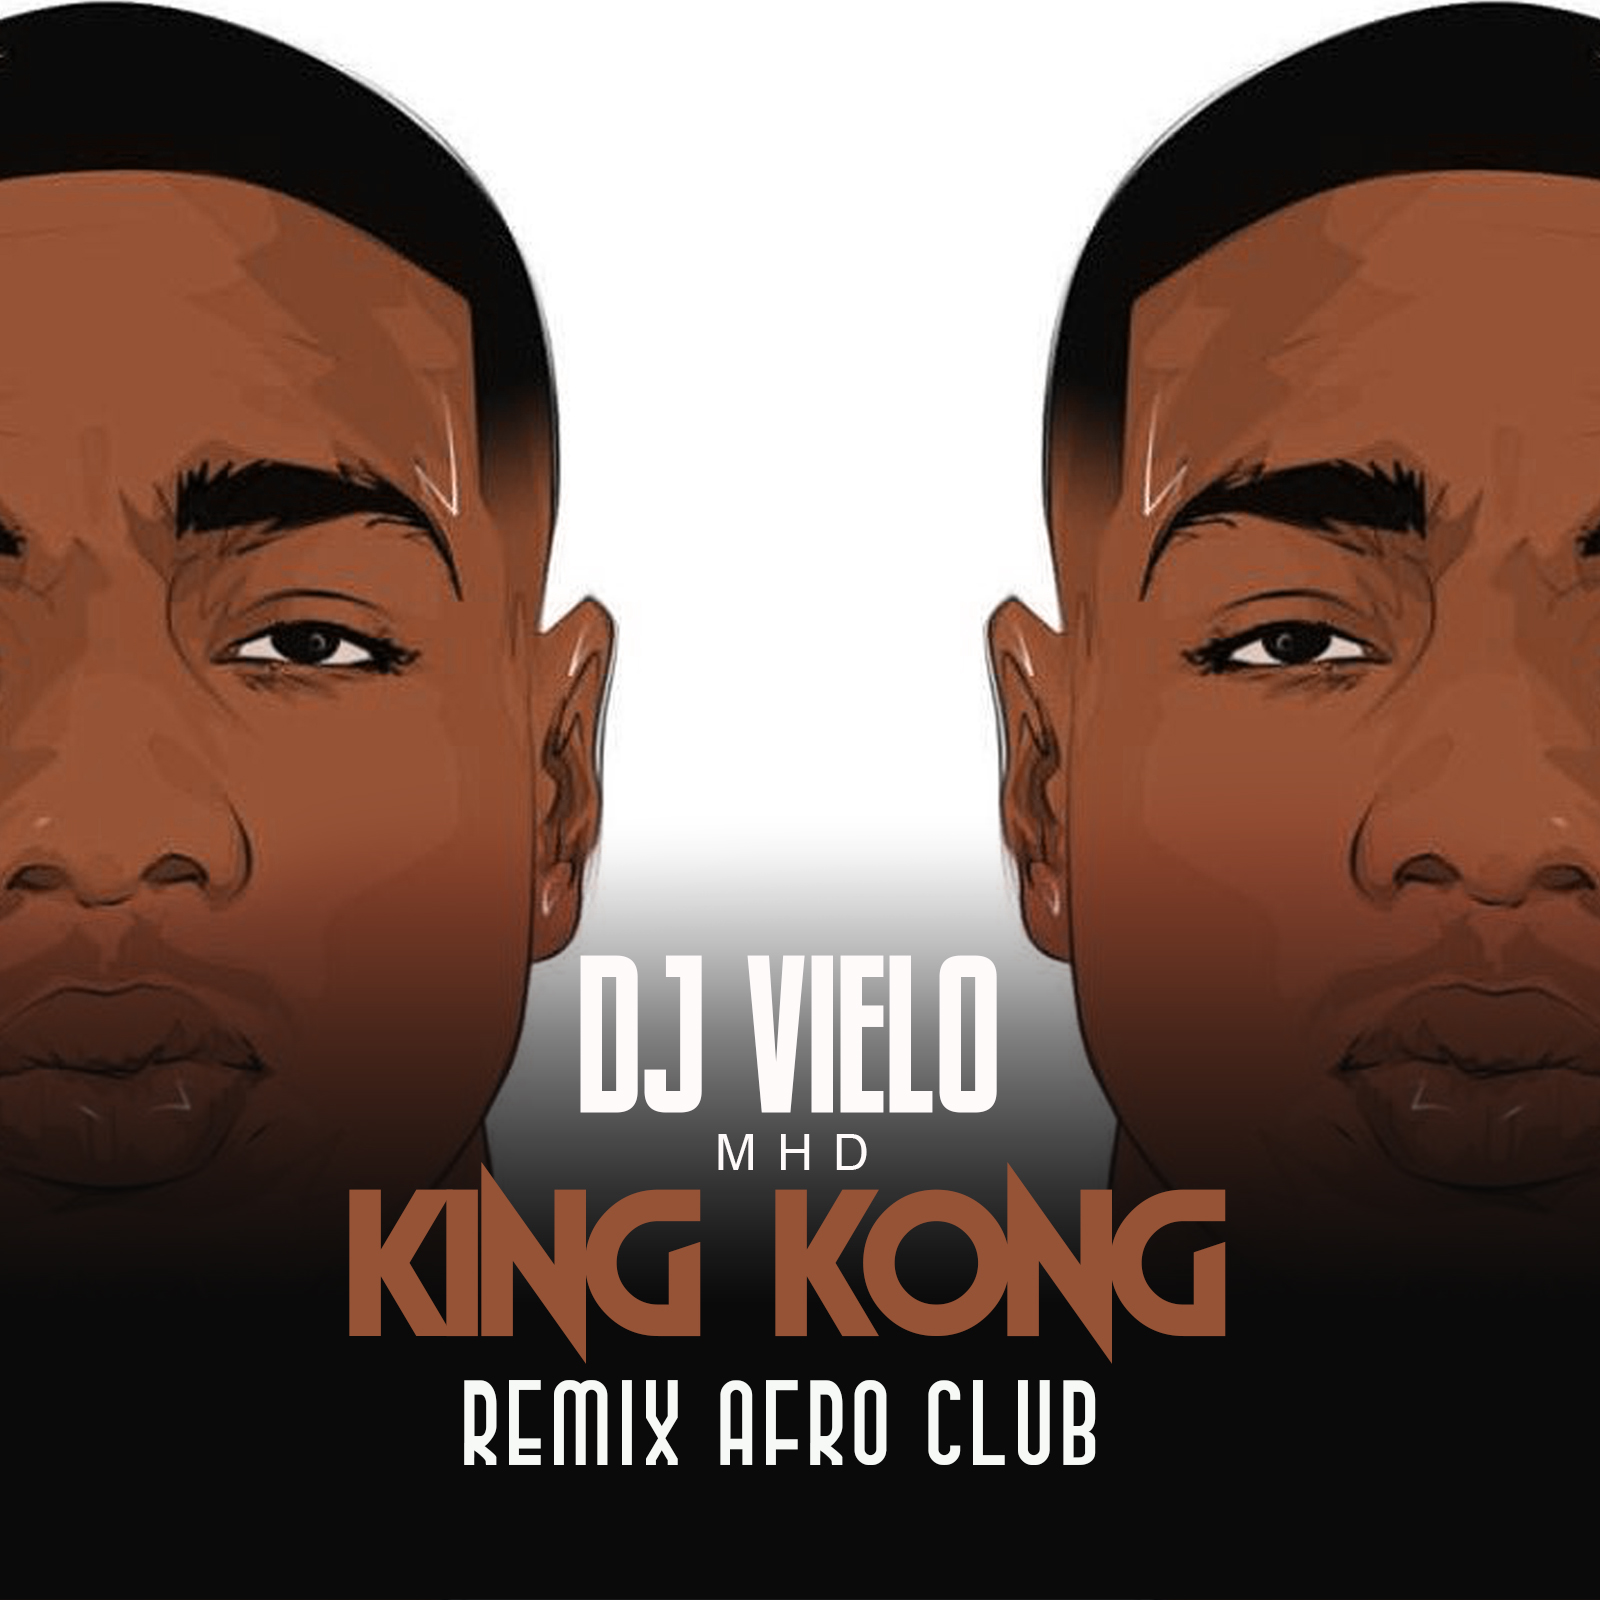 ڈاؤن لوڈ کریں Dj Vielo X MHD - AFRO TRAP Part.11 (King Kong) Remix Afro Club DISPO SUR SPOTIFY, DEEZER, ITUNES